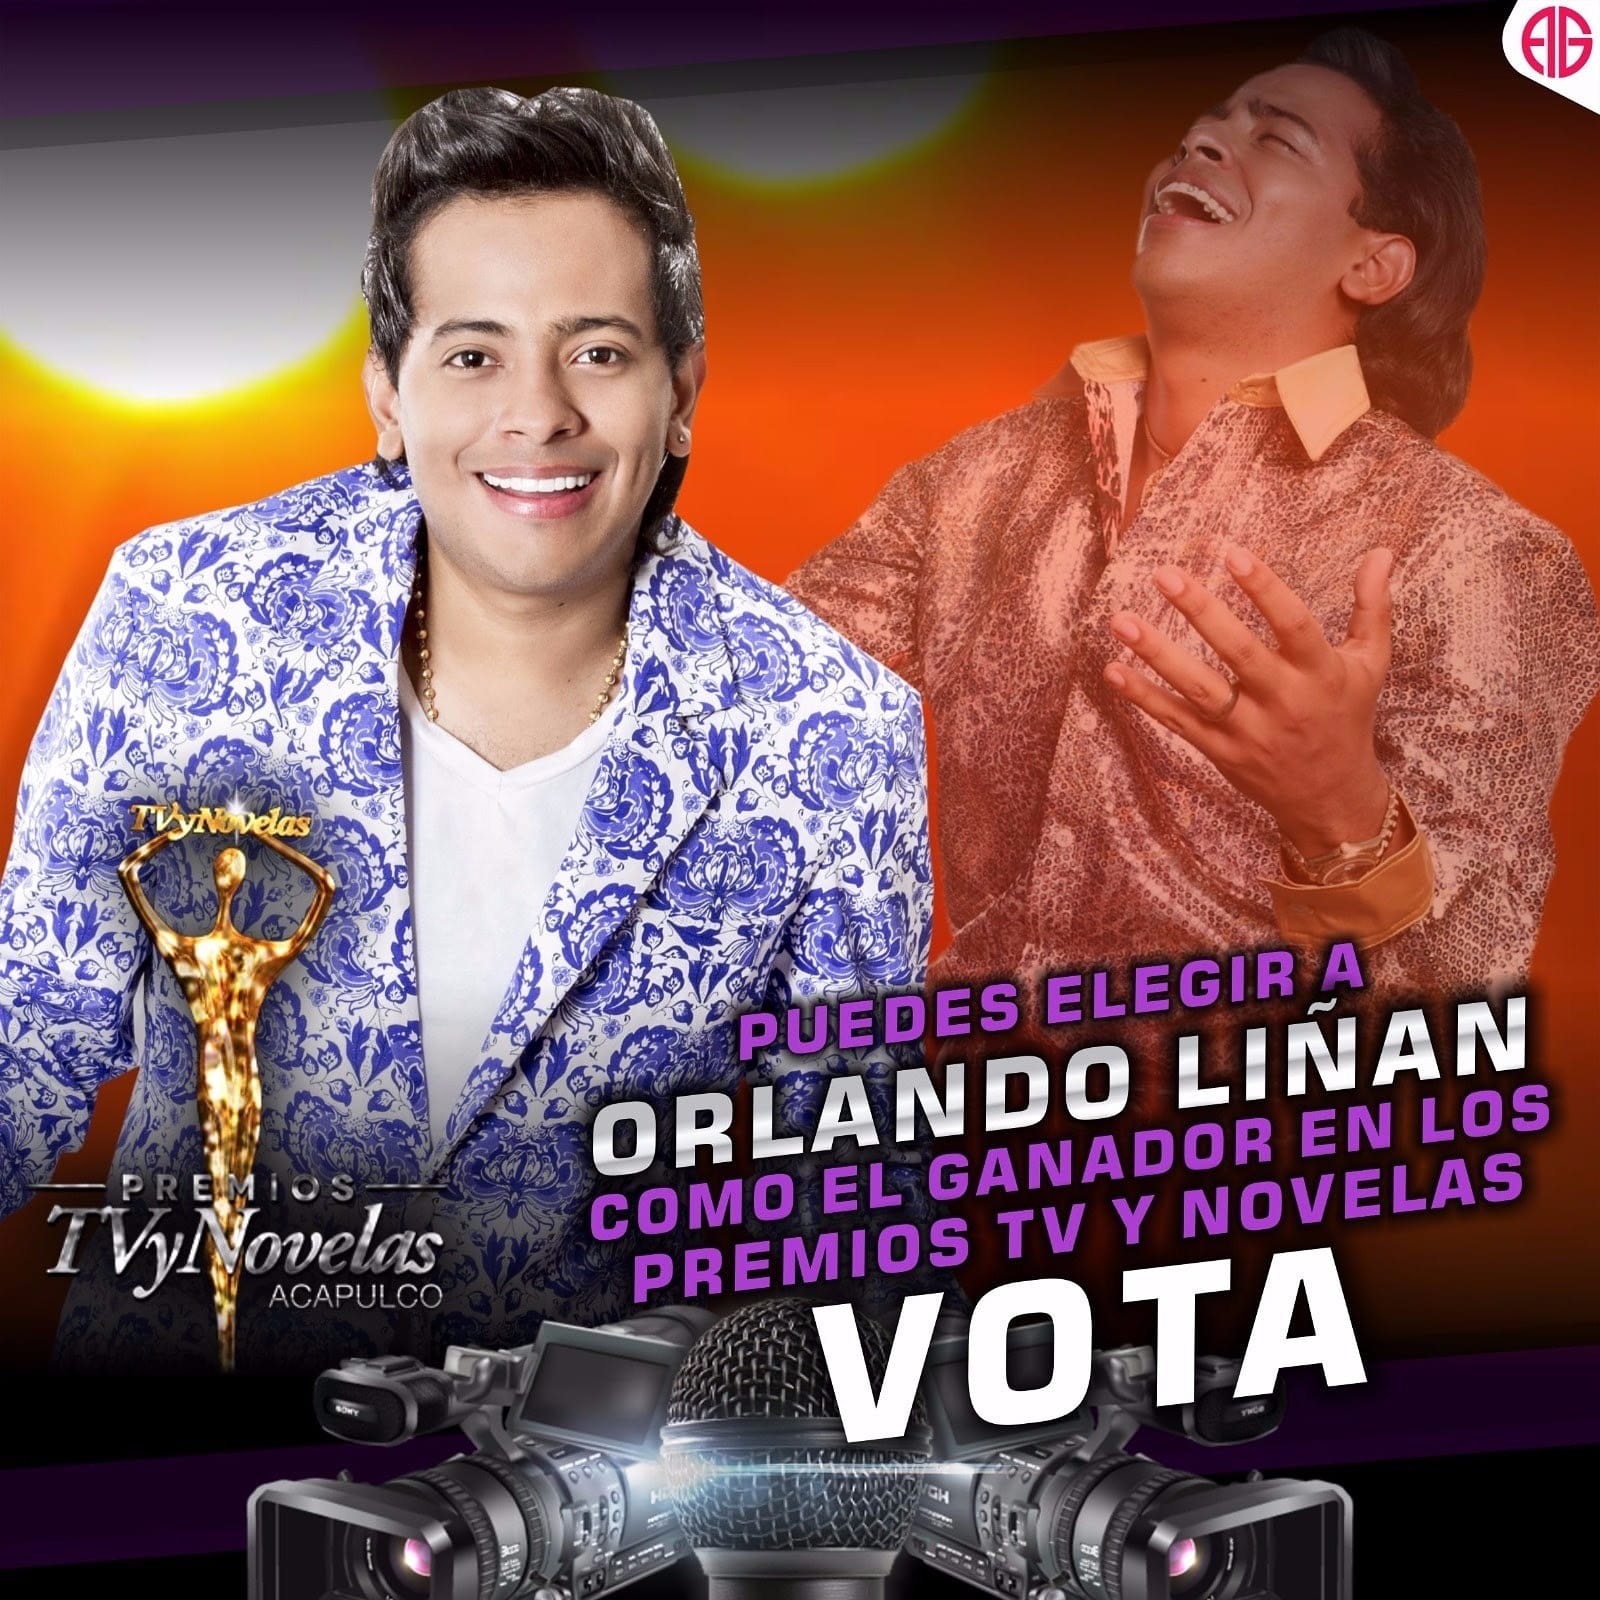 Orlando Liñán nominado a Protagonista Favorito Masculino de los Premios TV y Novela